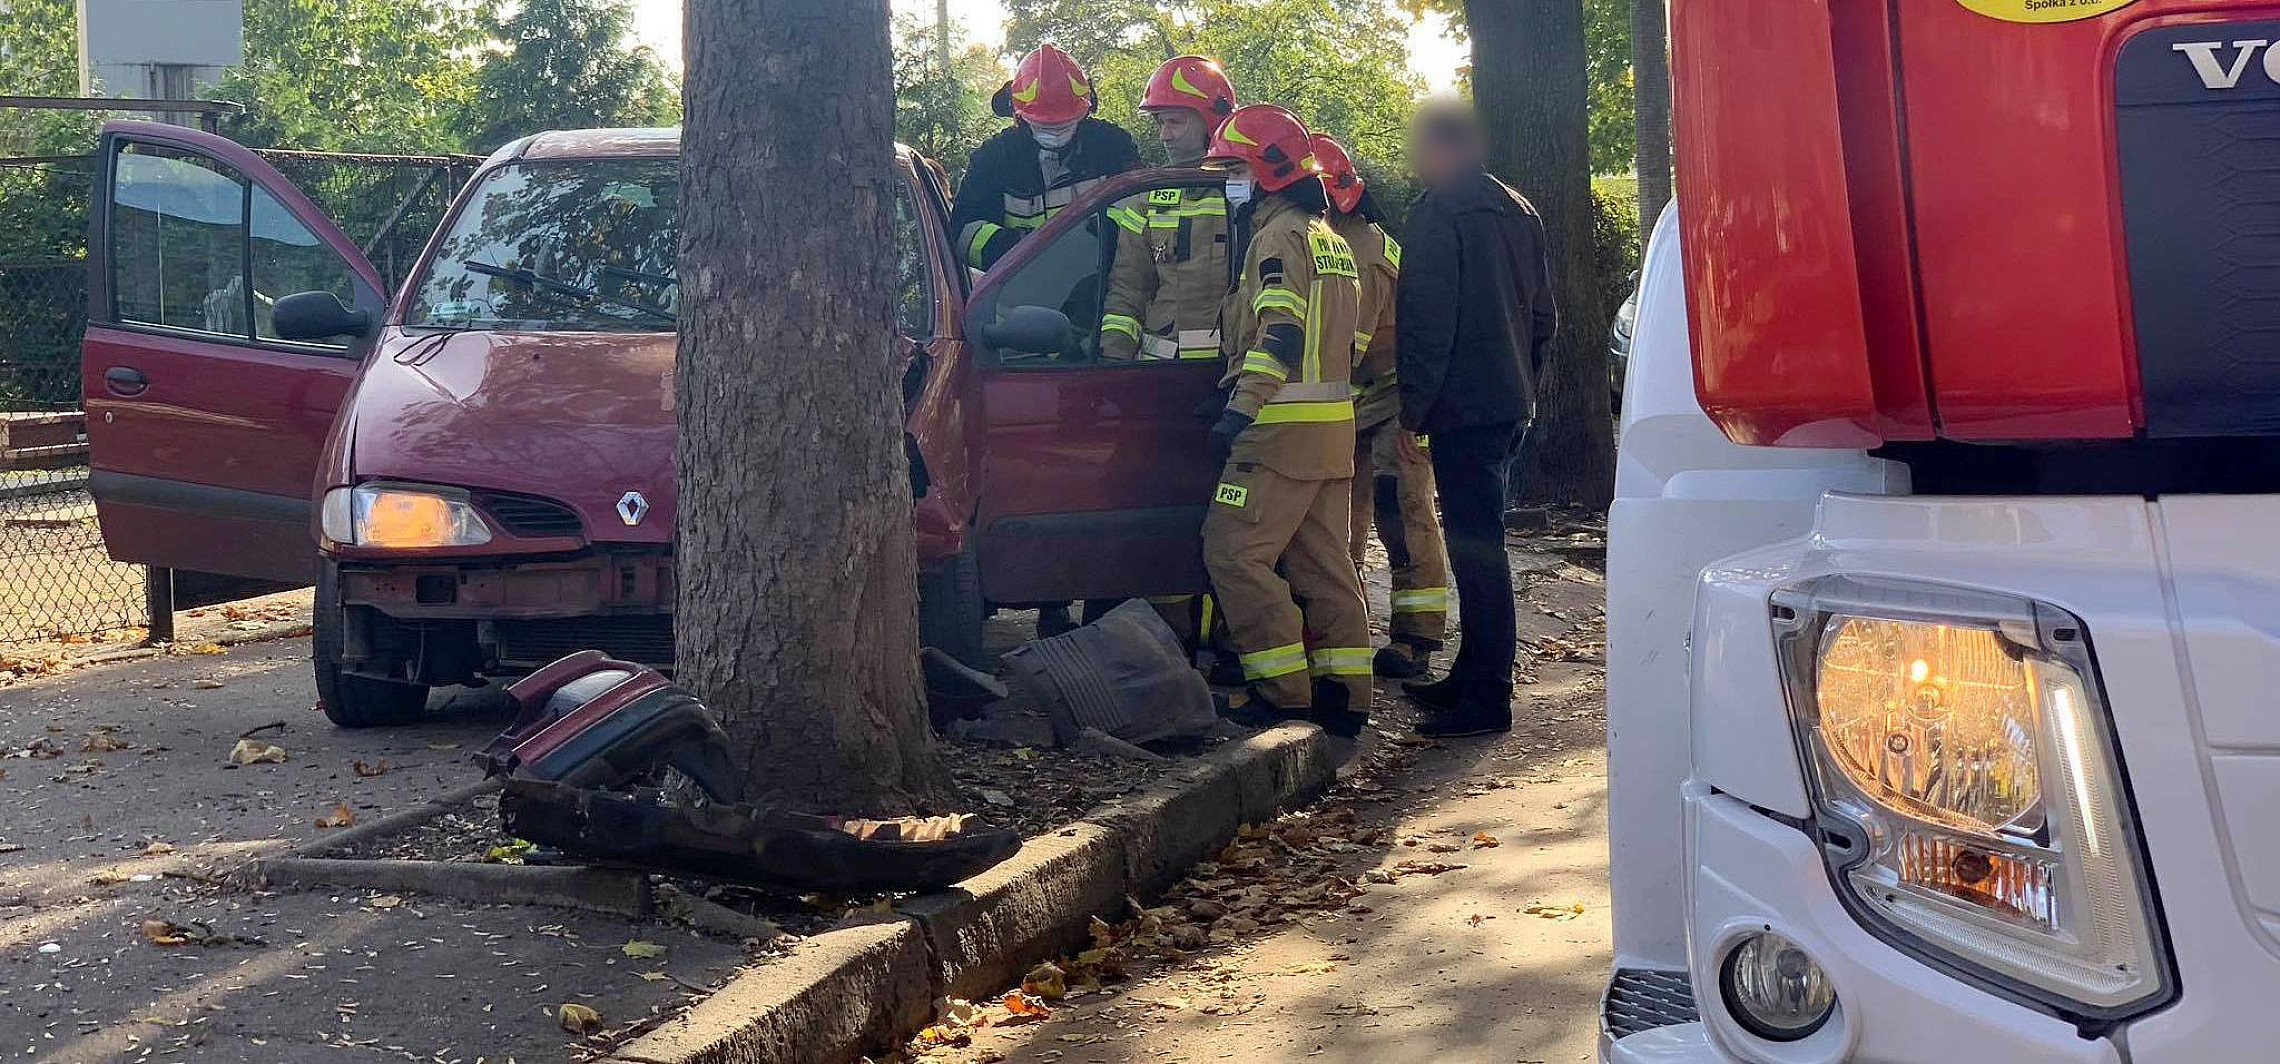 Inowrocław - Auto uderzyło w drzewo. Są poszkodowani